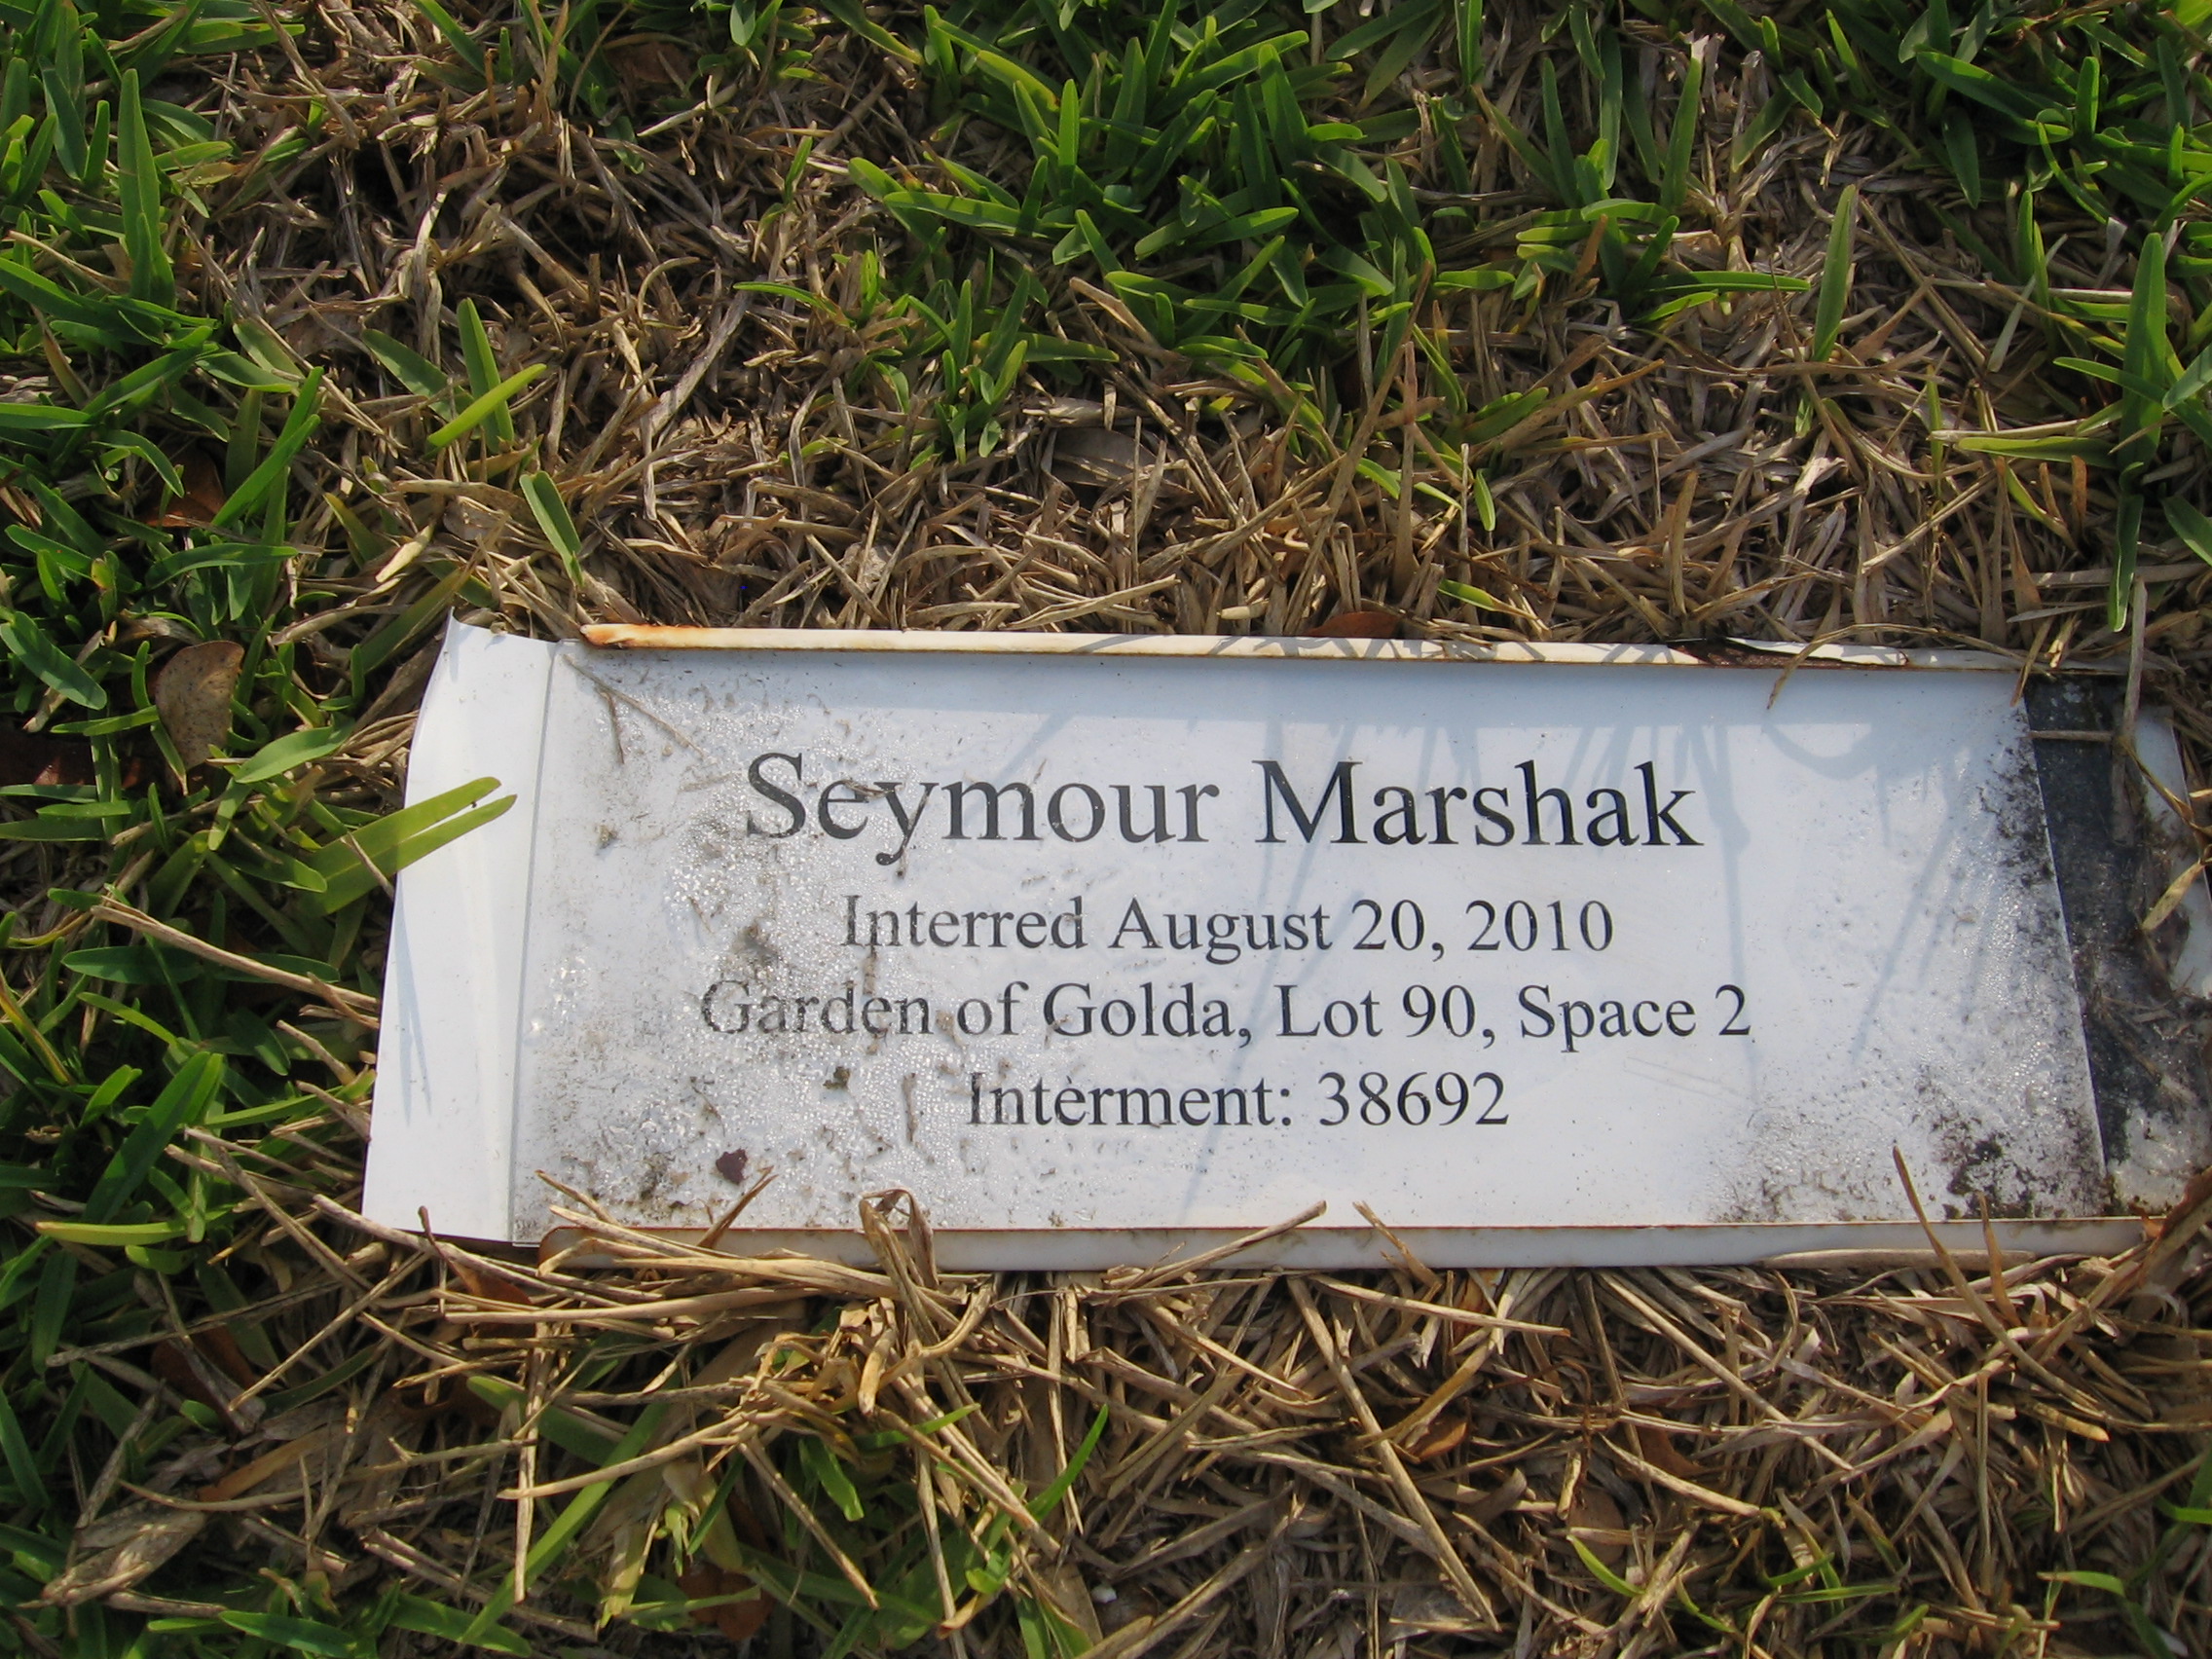 Seymour Marshak